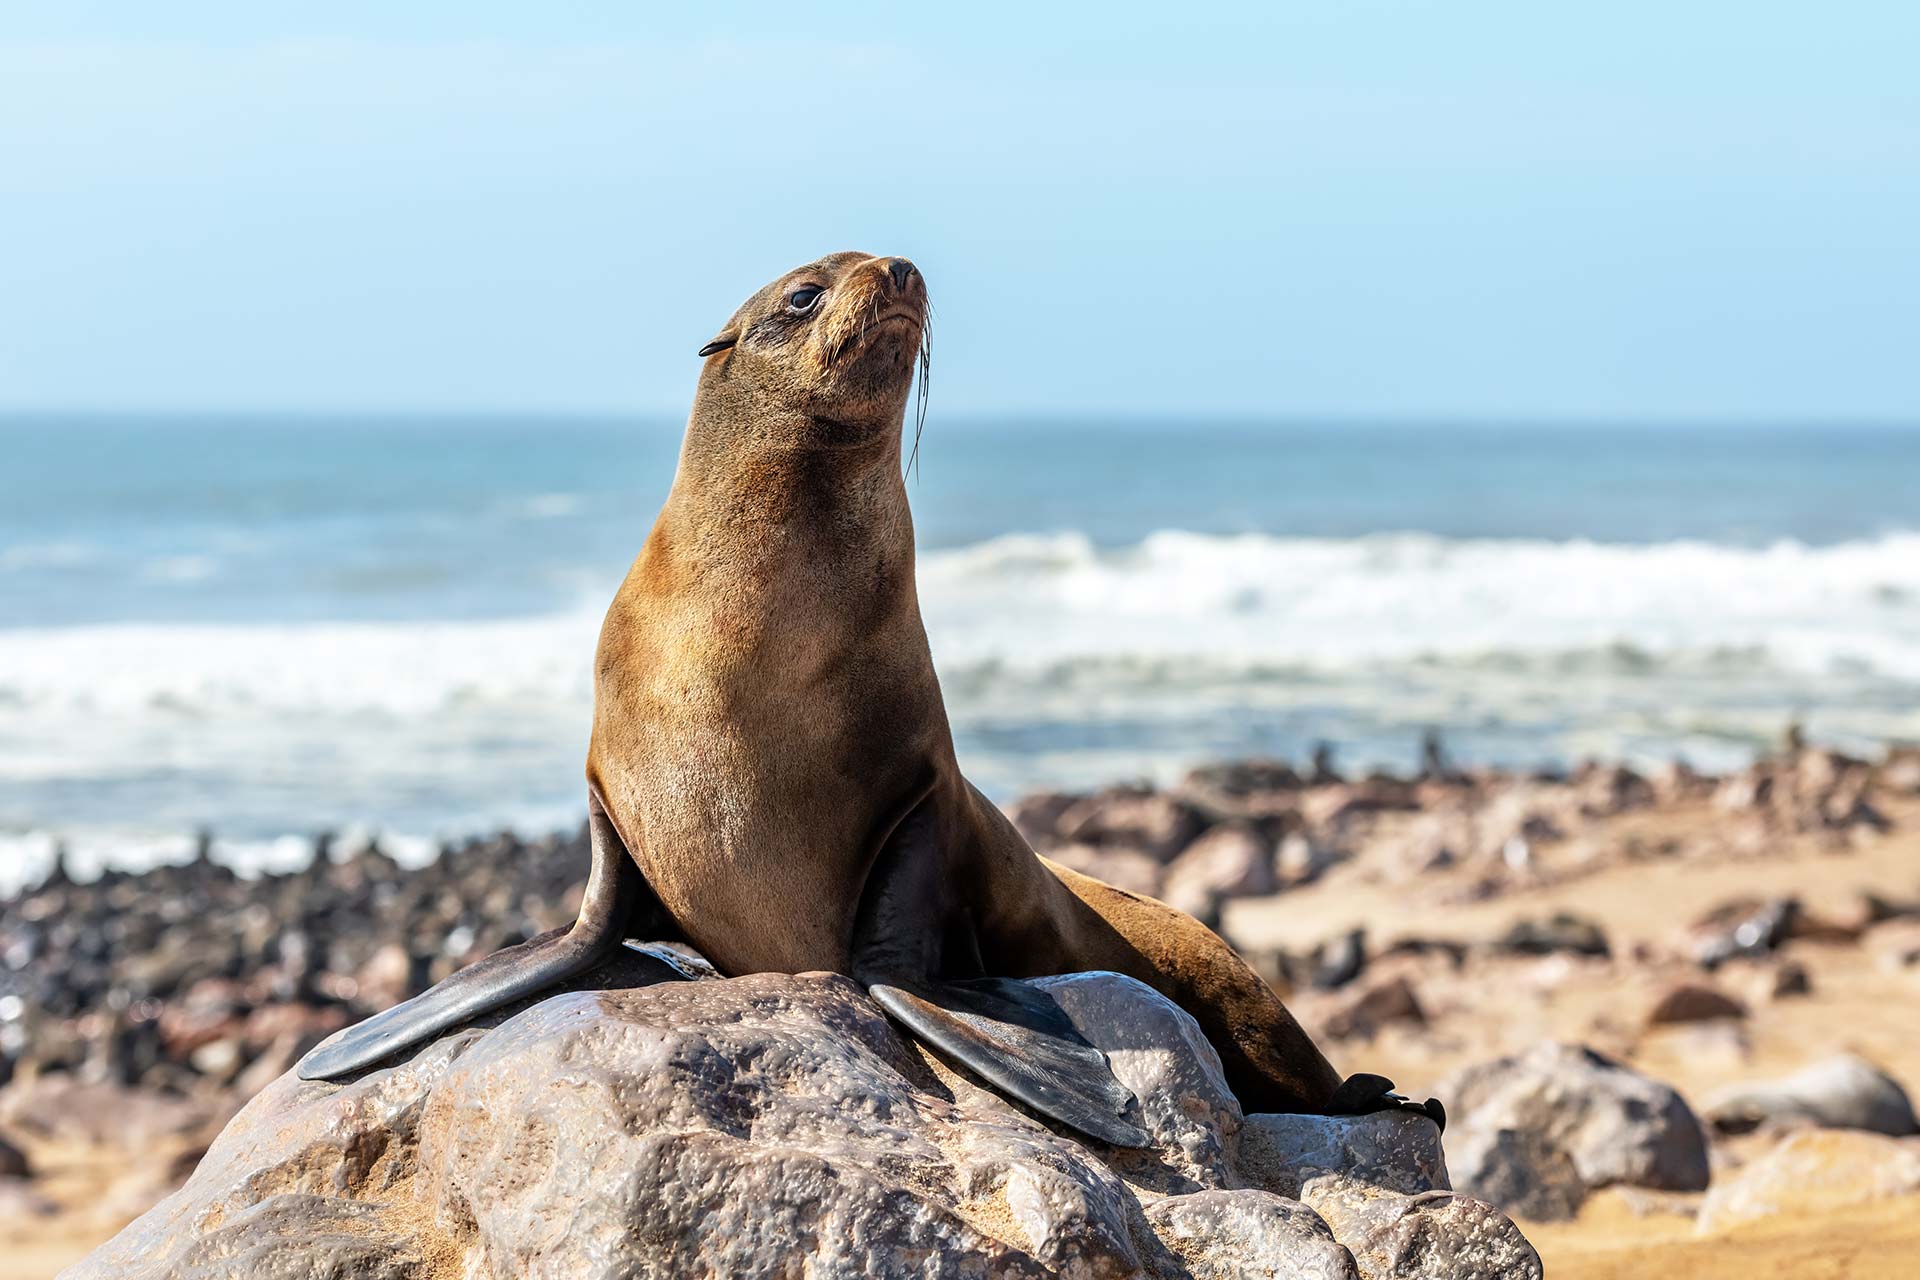 La colonia de cría de focas del Cabo más famosa de la costa de Namib